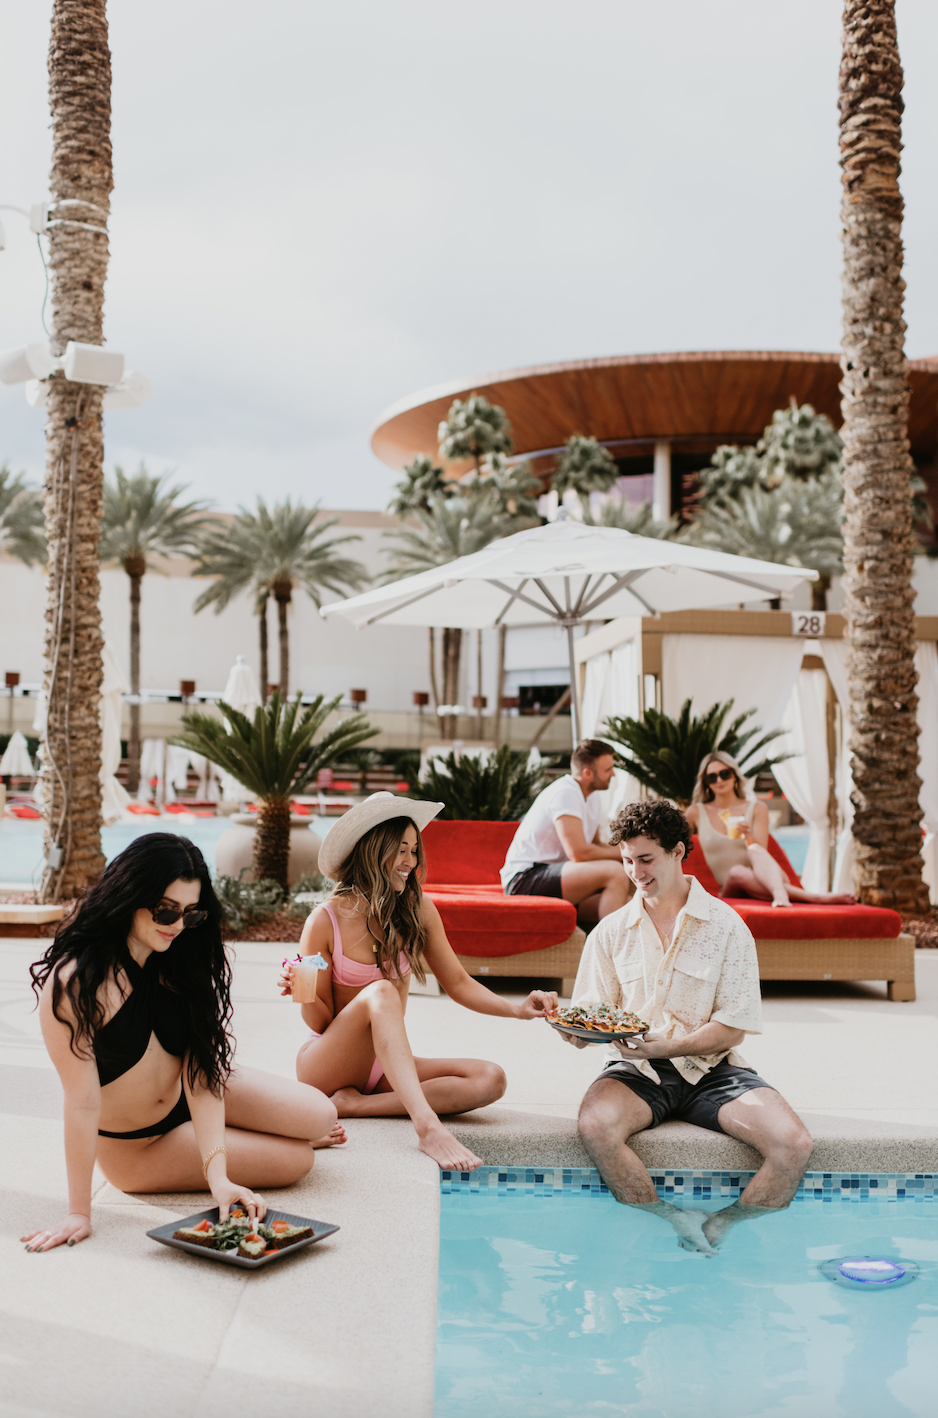 10 Best Las Vegas Pool Parties